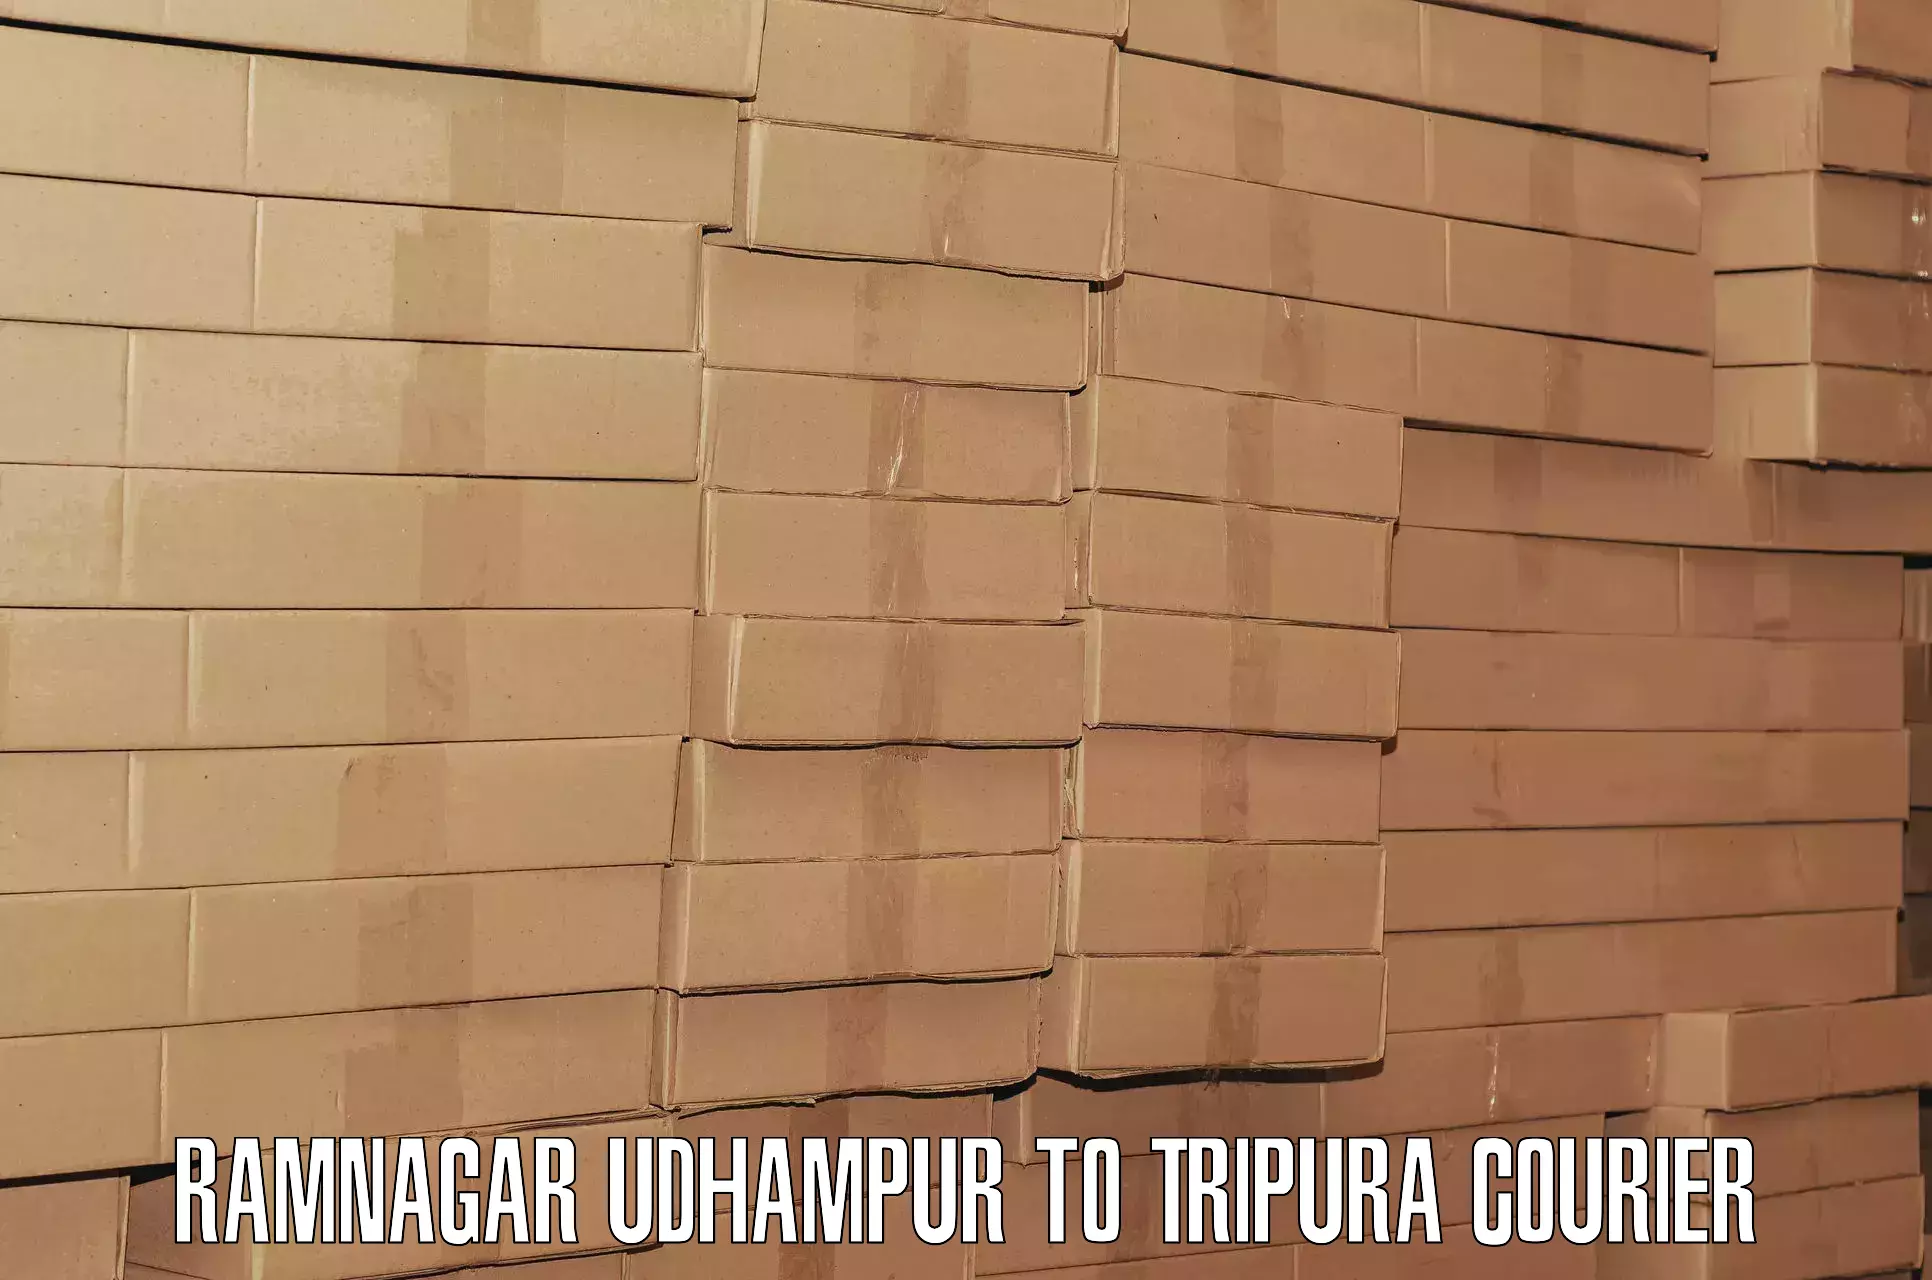 Baggage transport network Ramnagar Udhampur to NIT Agartala